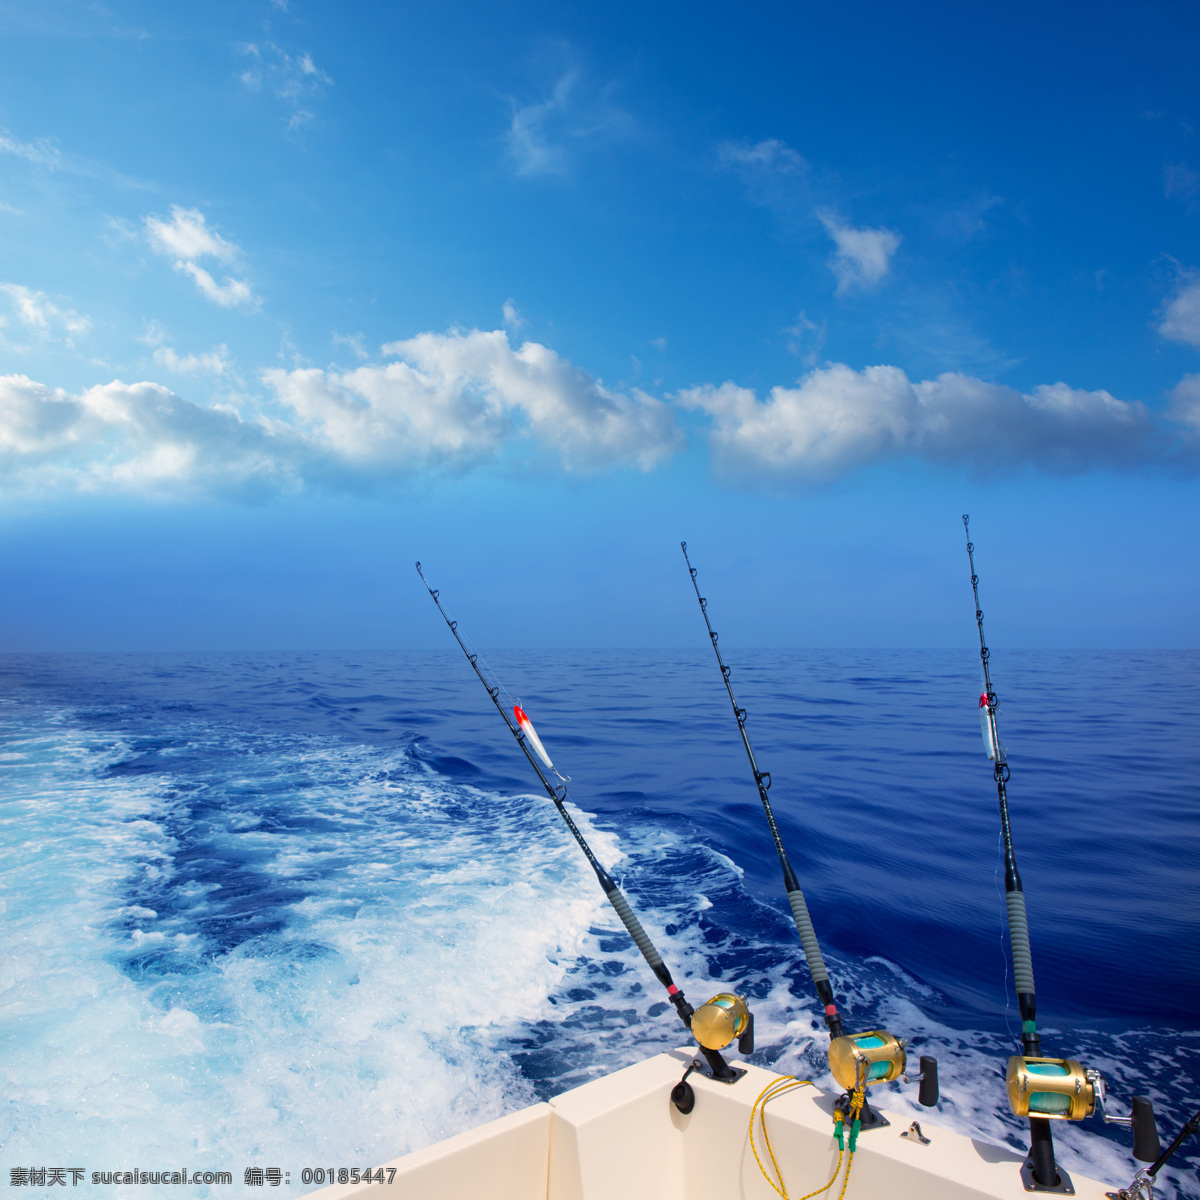 三个 鱼竿 钓鱼 垂钓 鱼 休闲生活 享受生活 高清图片 水中生物 生物世界